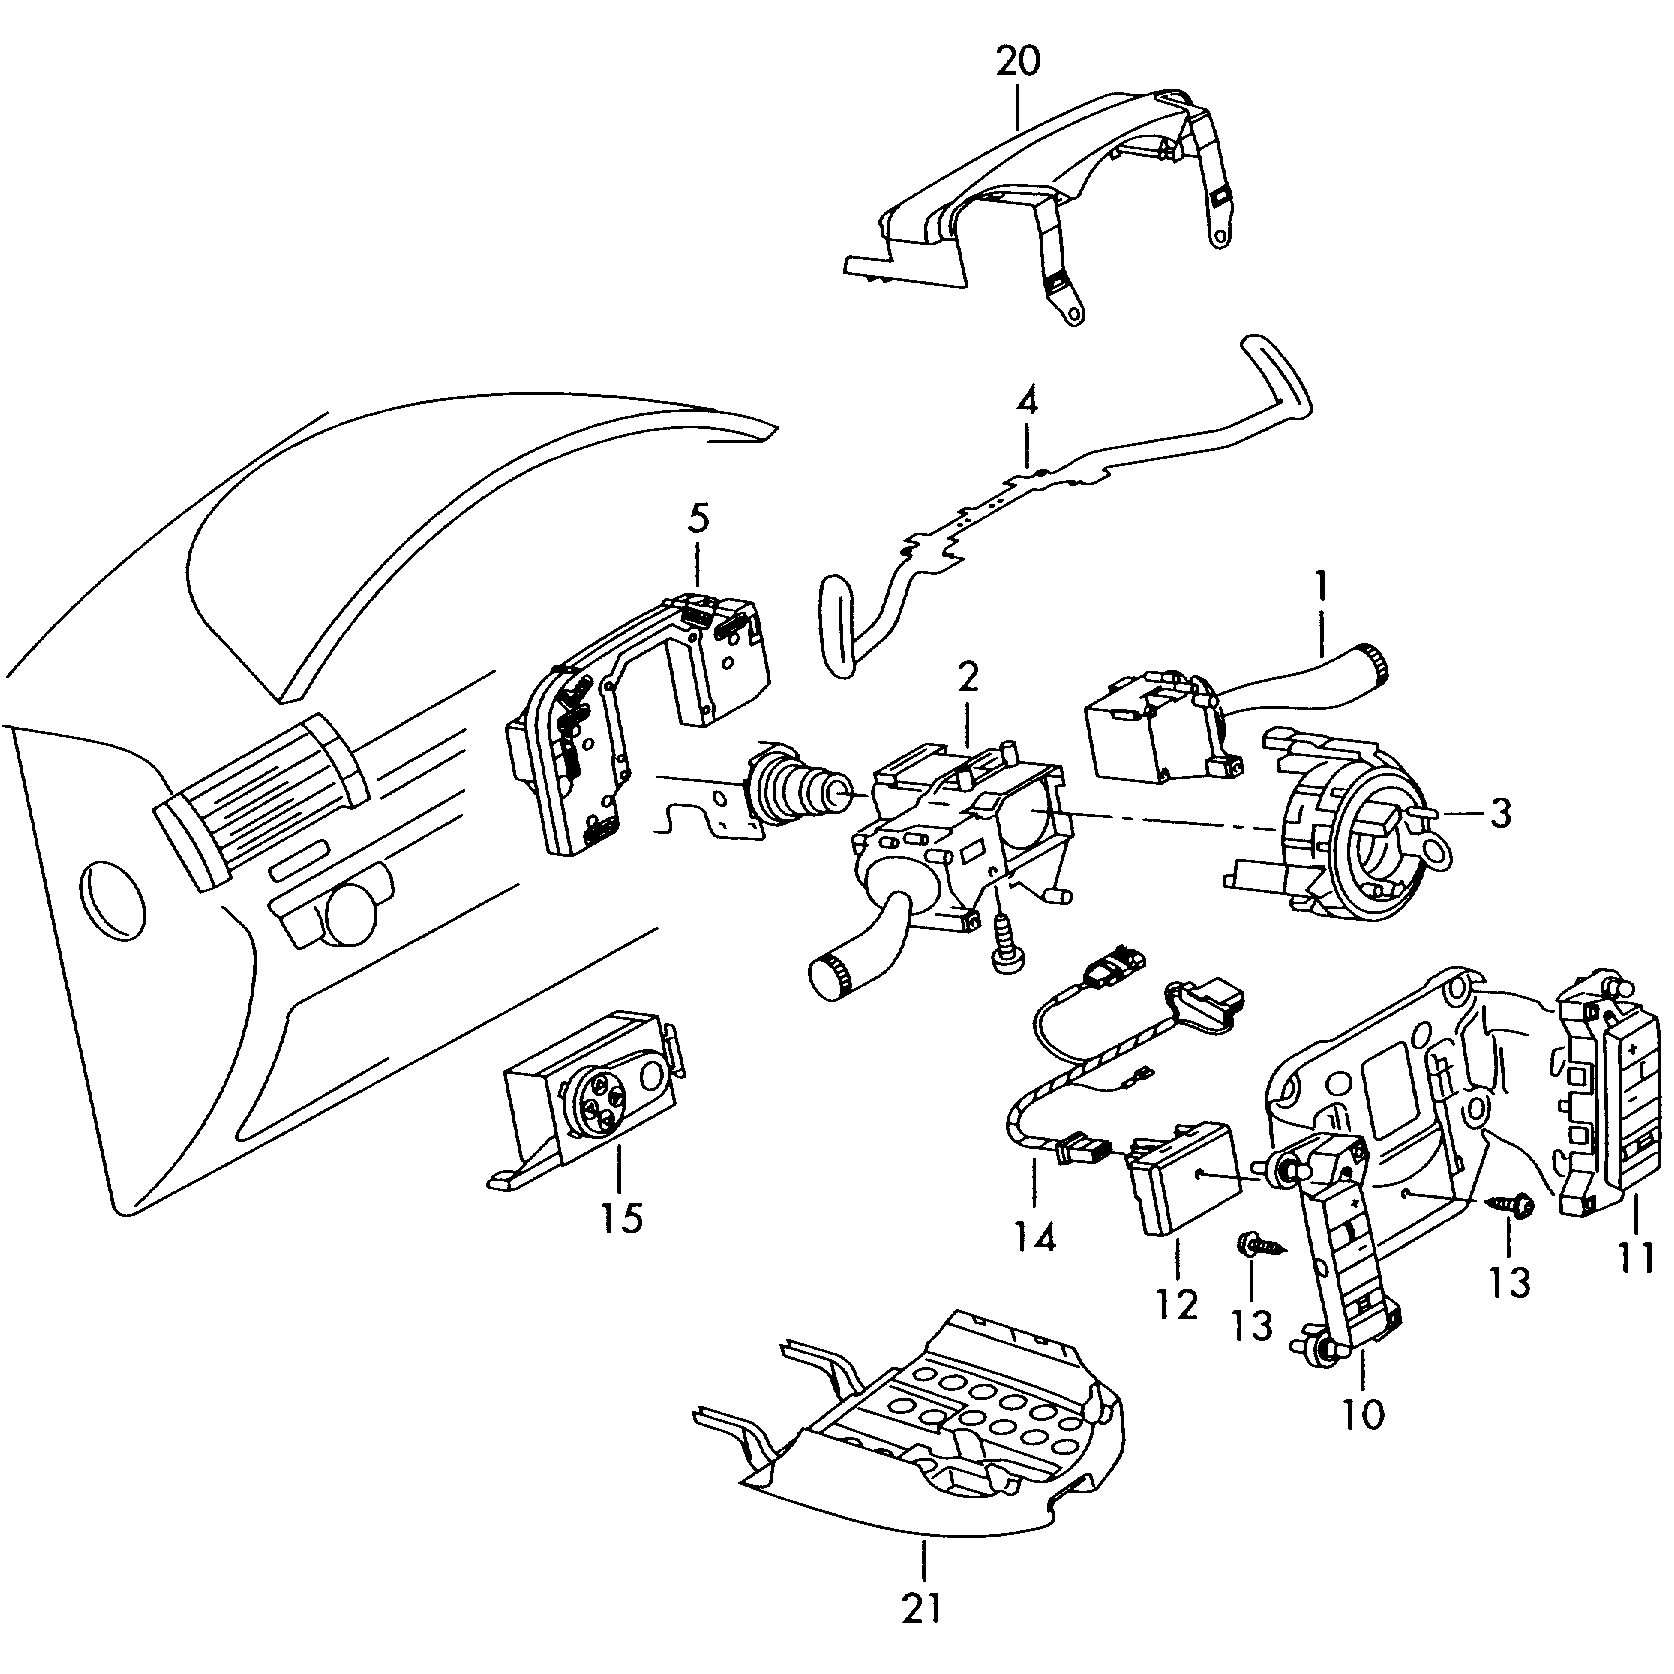 steering column switch
and trim - Touareg(TOUA)  